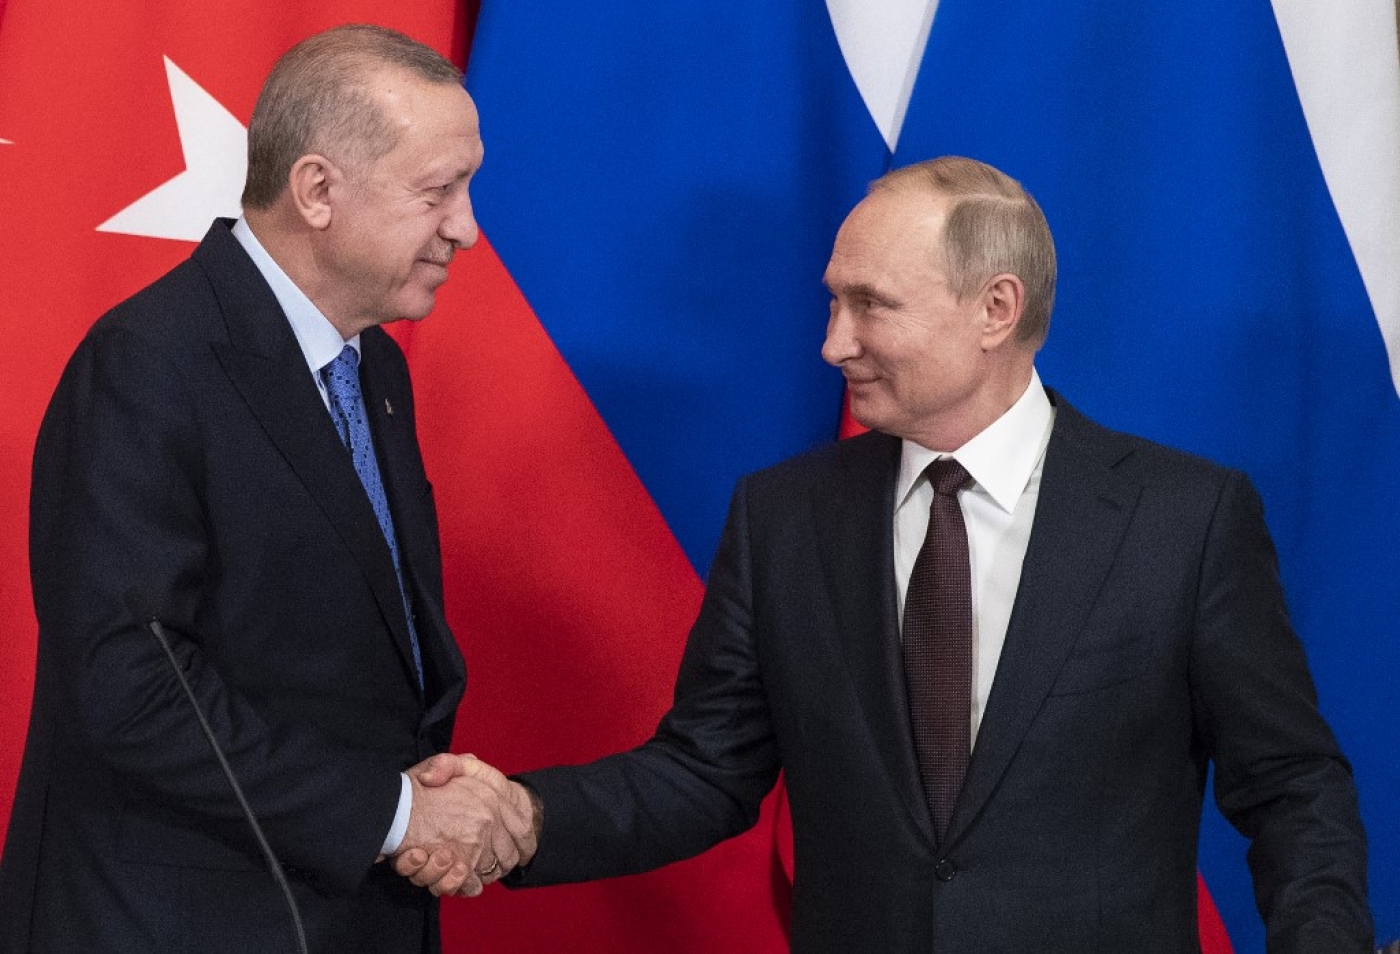 Le président russe Vladimir Poutine (à droite) et son homologue turc Recep Tayyip Erdoğan se serrent la main à la fin d’une conférence de presse commune après des négociations au Kremlin, à Moscou, le 5 mars 2020 (AFP)